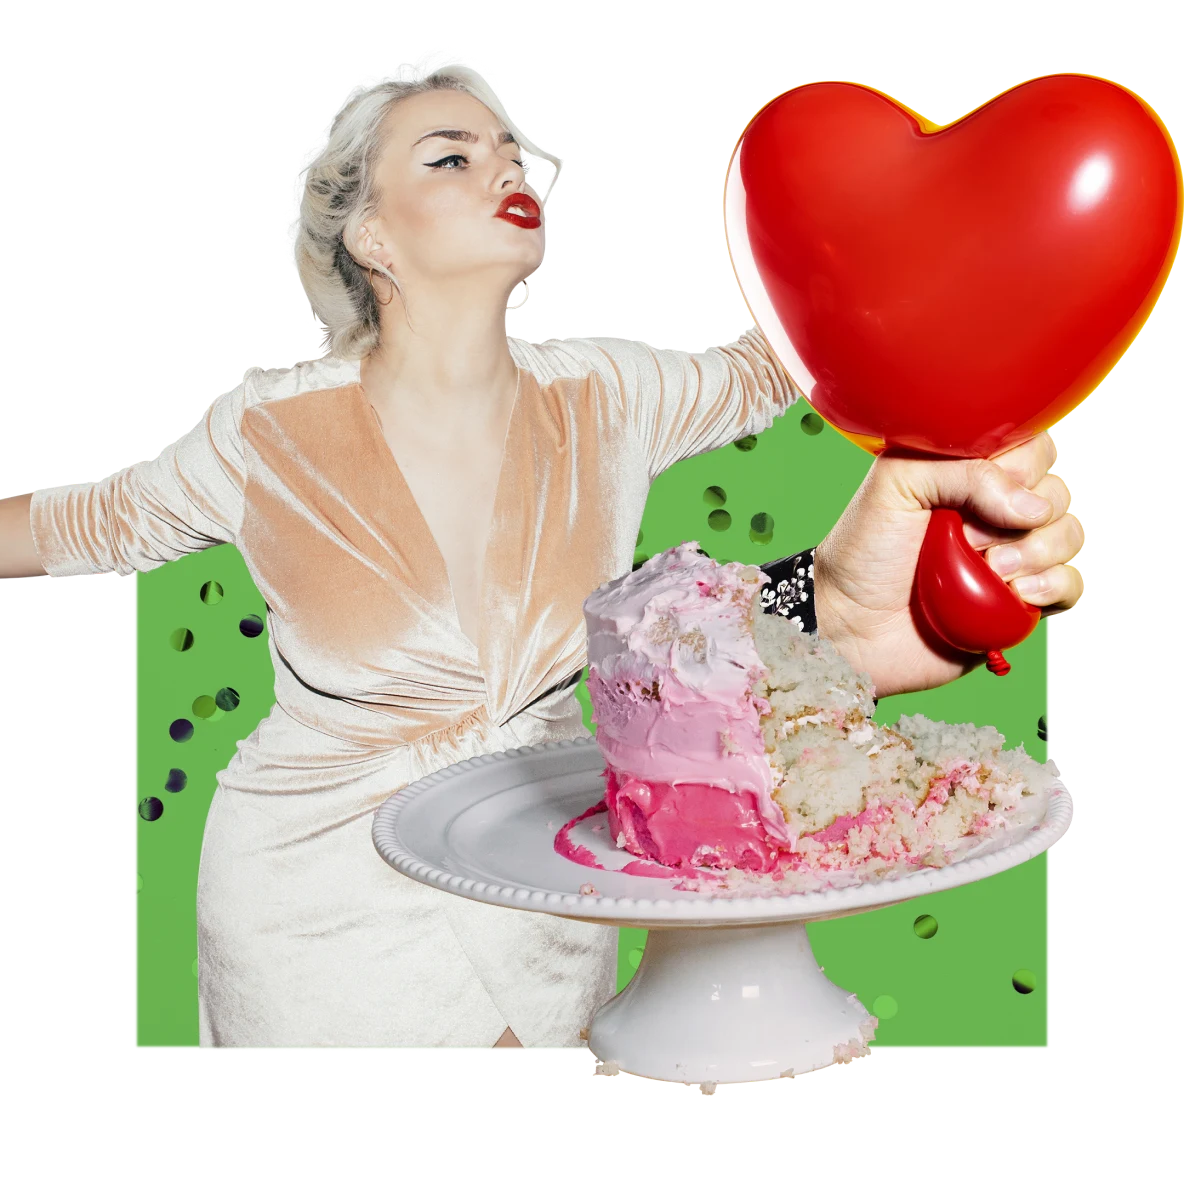 Collage mit Partymotiven. Links tanzt eine weiße Frau mit blonden Haaren und rotem Lippenstift in einem hellrosa Kleid. Halb aufgegessener pinker Kuchen auf einem weißen Servierteller. Weiße Hand hält einen herzförmigen roten Luftballon fest.